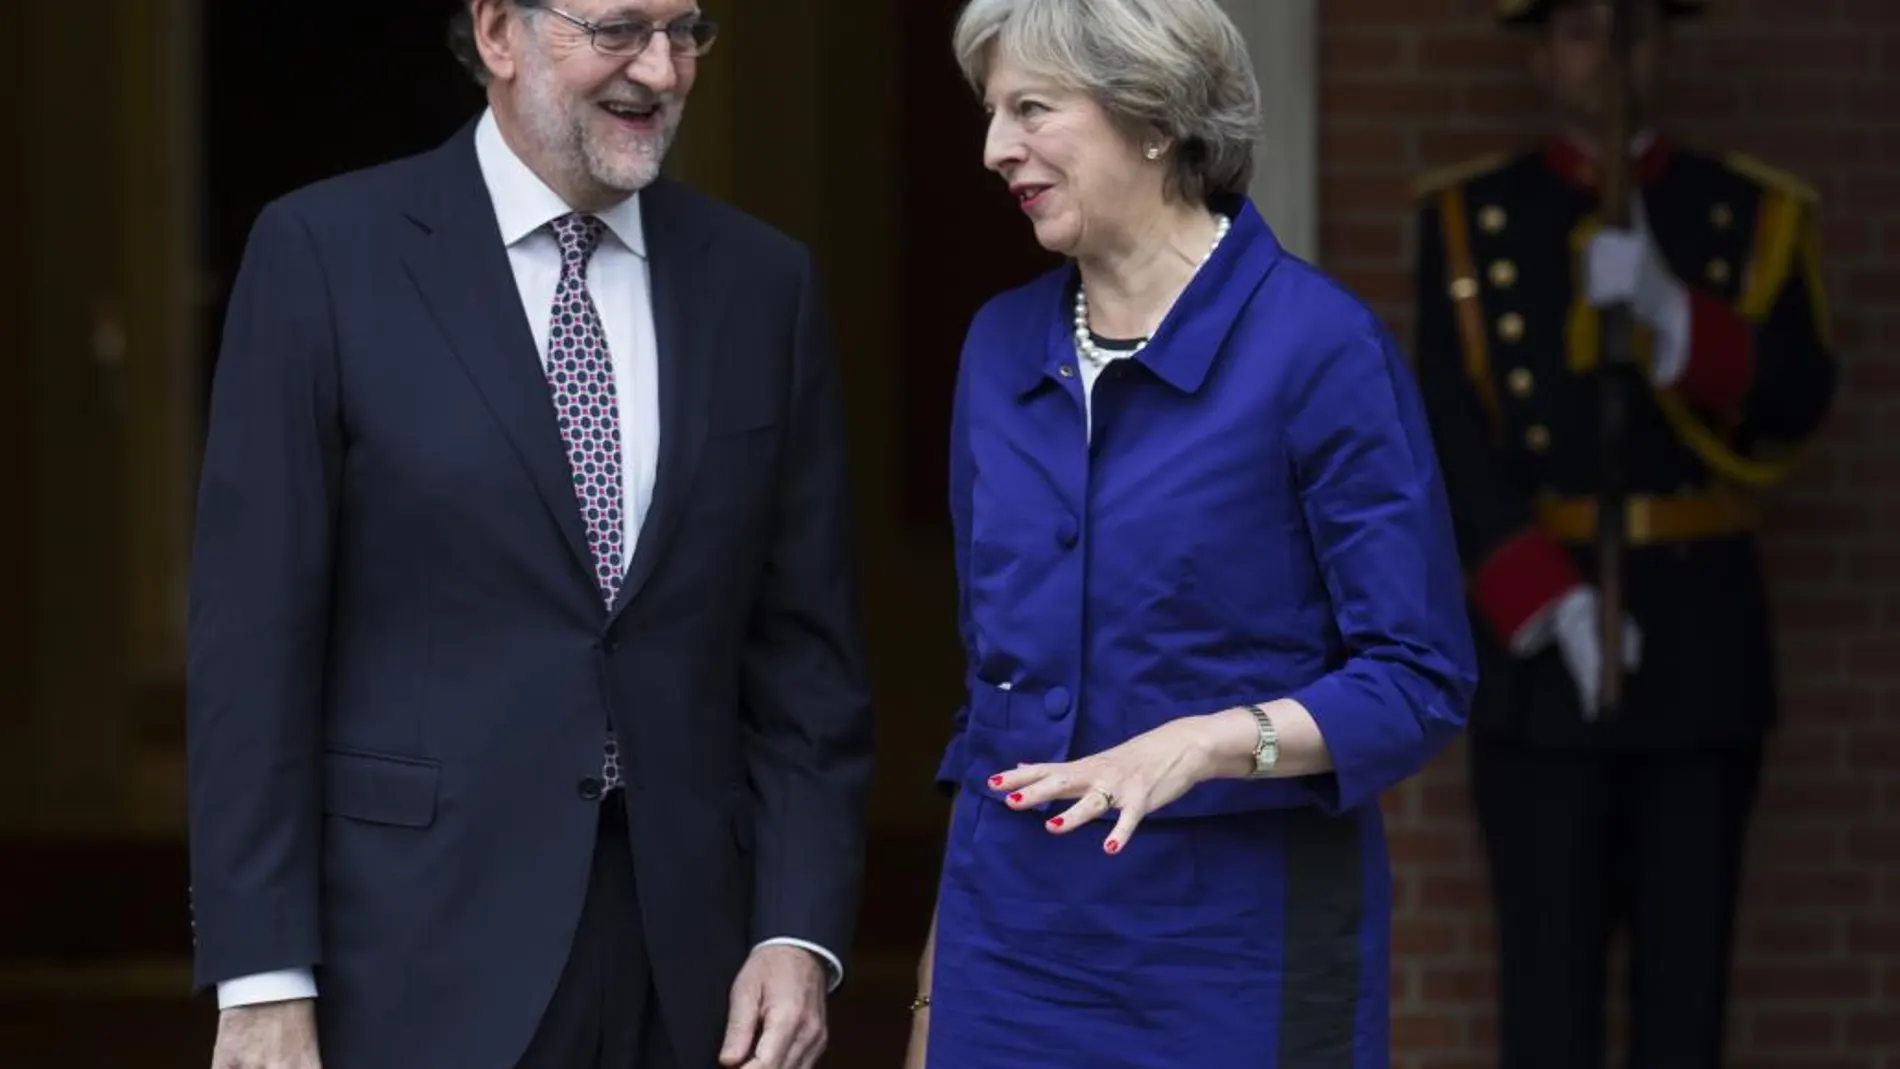 El presidente del Gobierno en funciones, Mariano Rajoy, y la primera ministra británica, Theresa May, tras la reunión que han mantenido hoy en el Palacio de la Moncloa